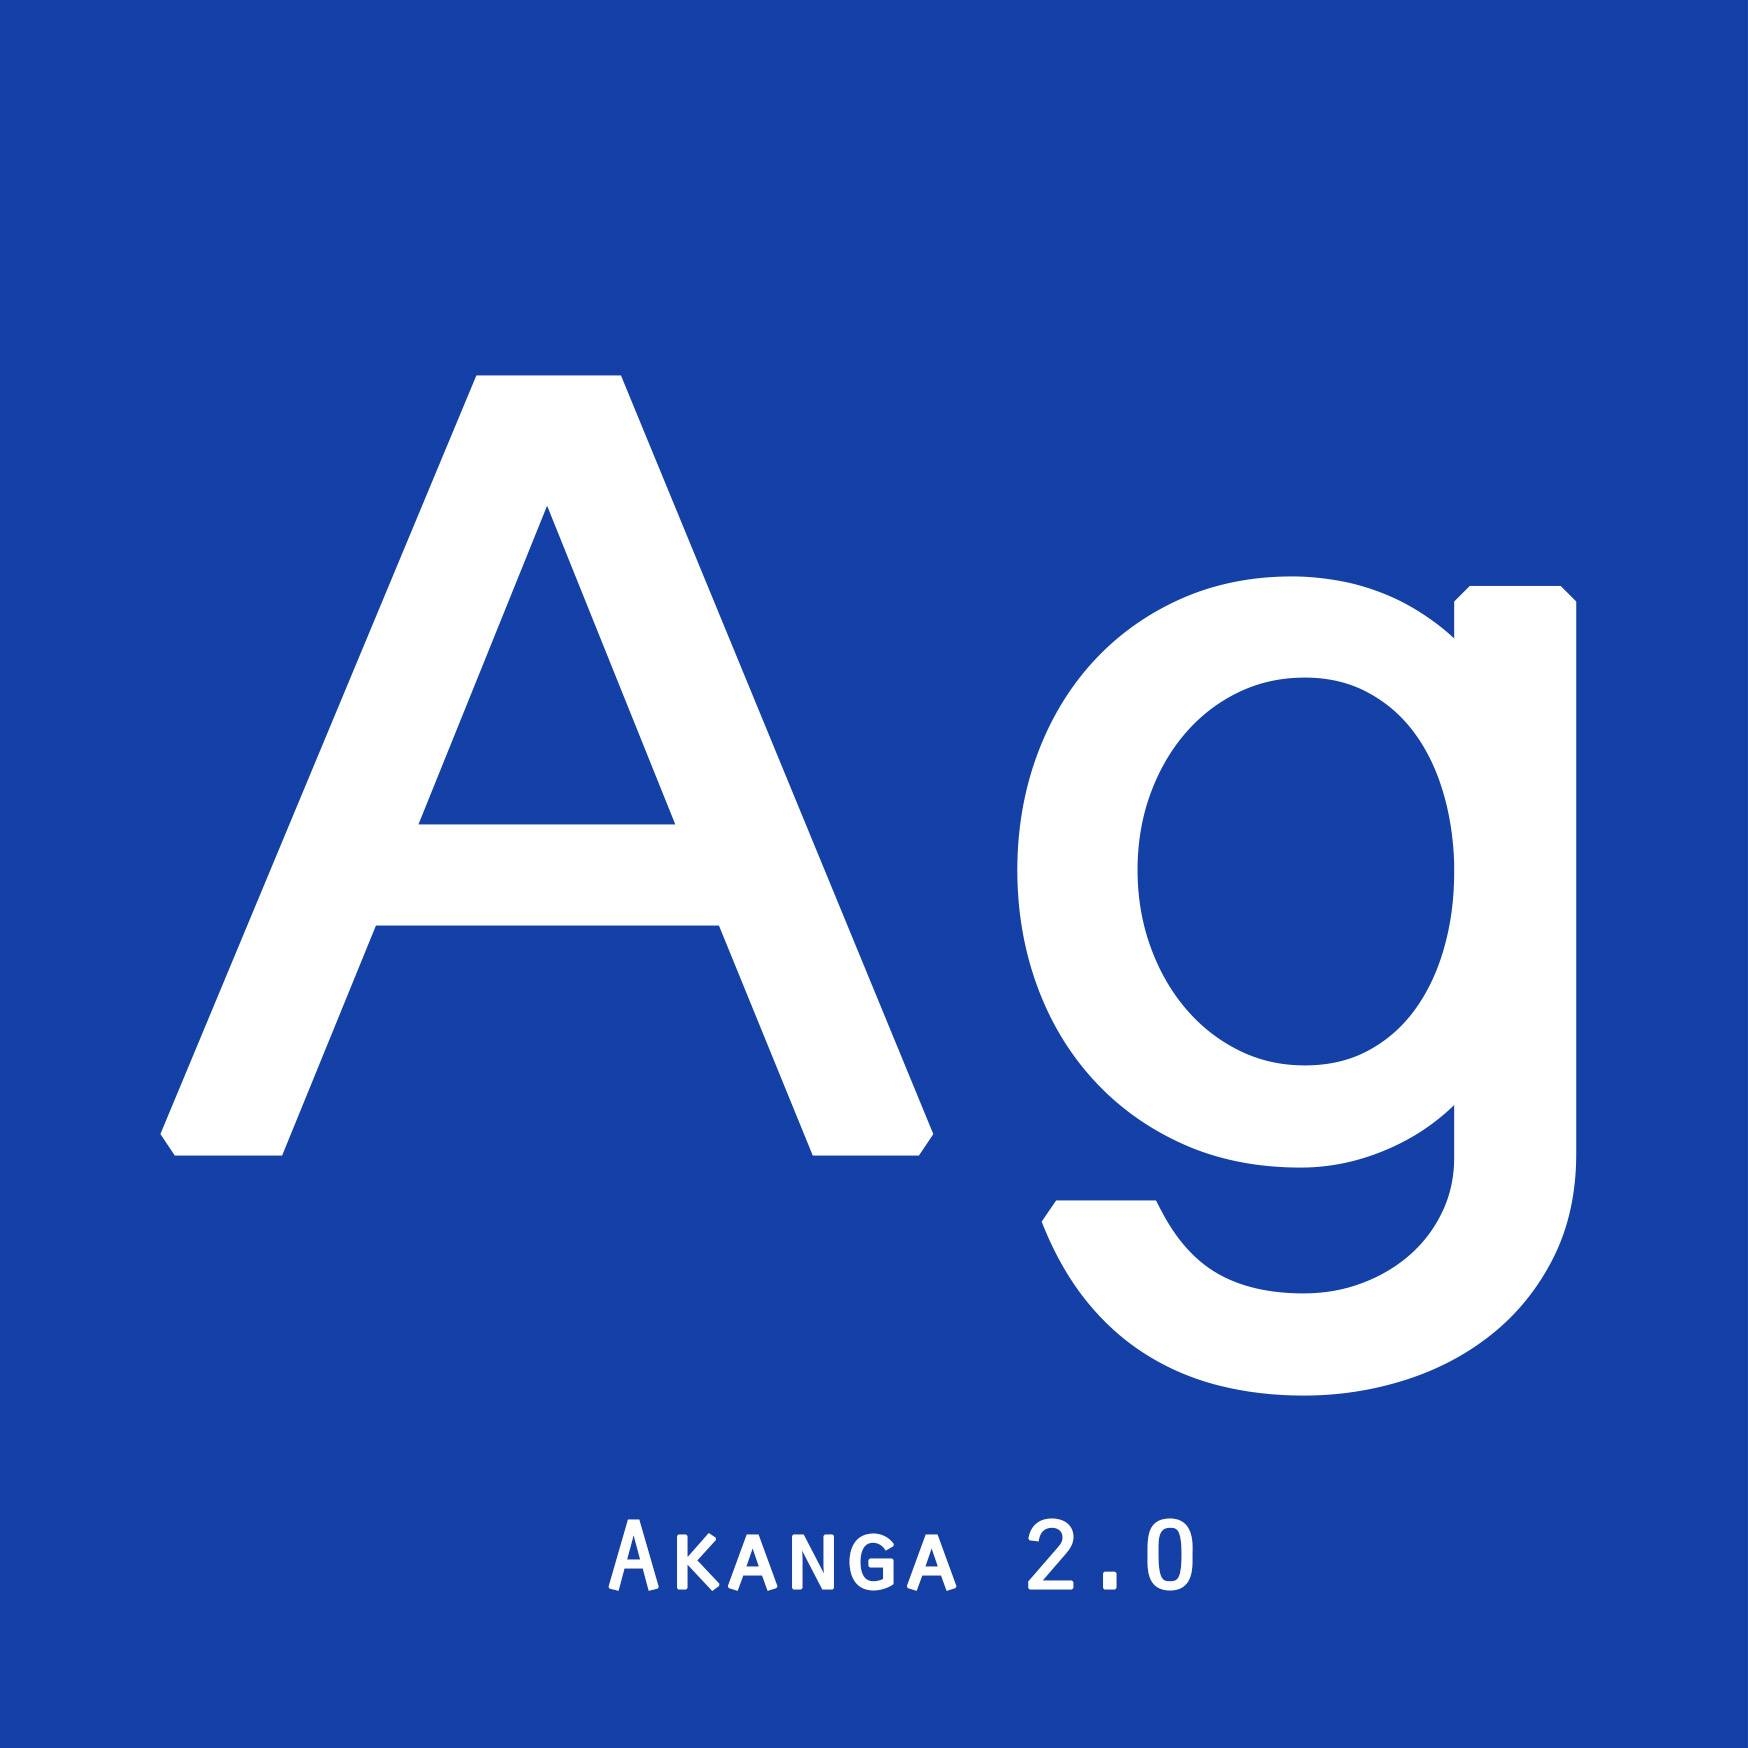 Akanga 2.0 – Former les entreprises à Madagascar sur les réseaux sociaux et le community management